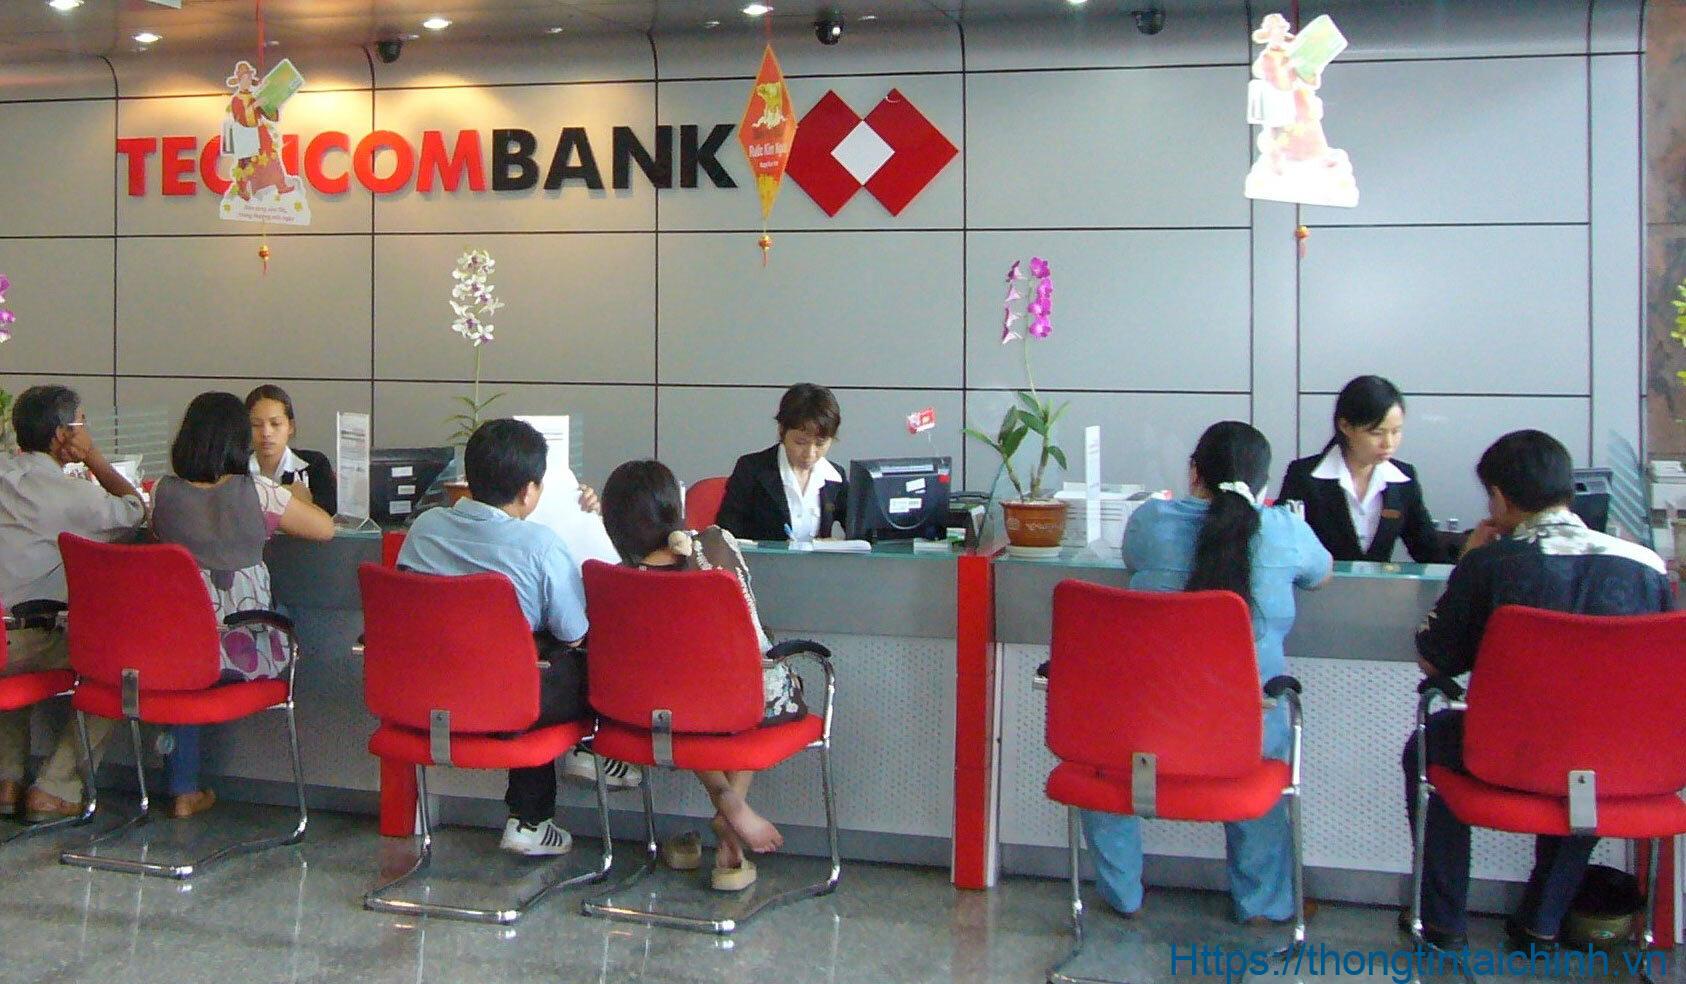 Lựa chọn gói vay tiền trả góp tại ngân hàng Techcombank khách hàng được tặng gói bảo hiểm vô cùng hấp dẫn kèm theo